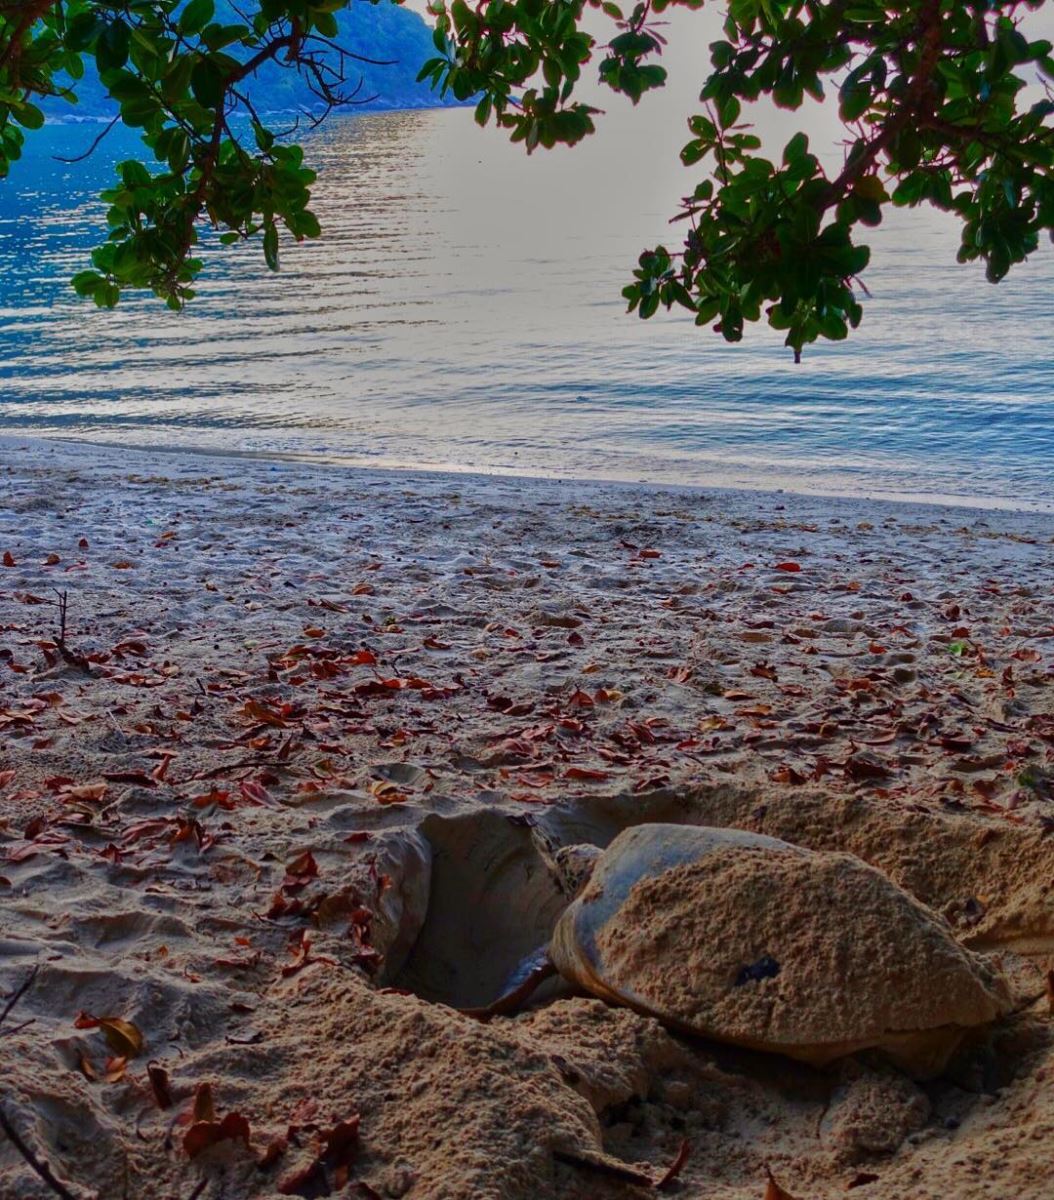 Rùa biển Côn Đảo sẽ lên bờ đẻ trứng từ tháng 4 đến tháng 9 dương lịch hàng năm